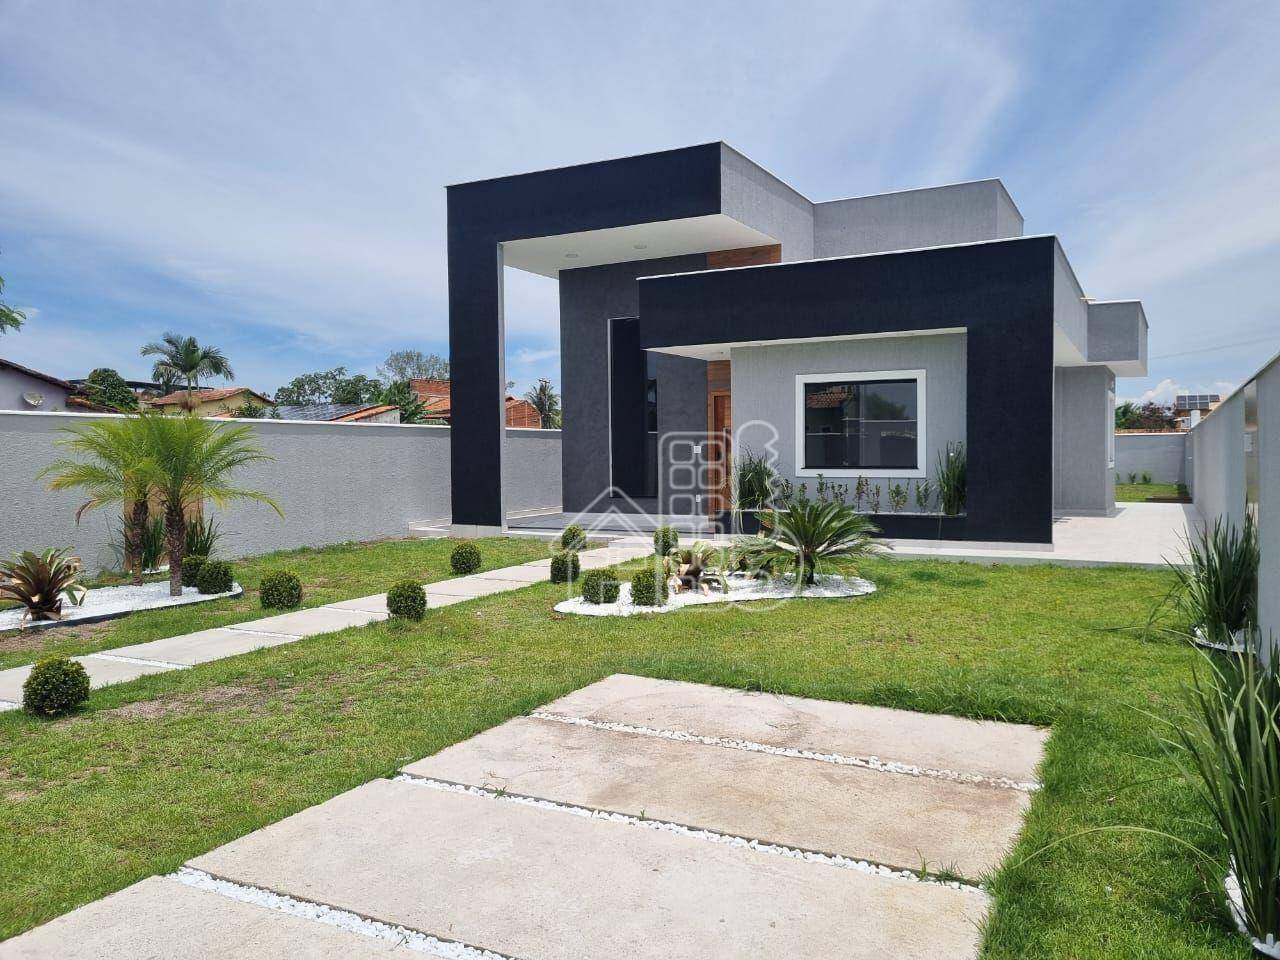 Casa com 3 dormitórios à venda, 106 m² por R$ 680.000,00 - Jardim Atlântico Leste (Itaipuaçu) - Maricá/RJ